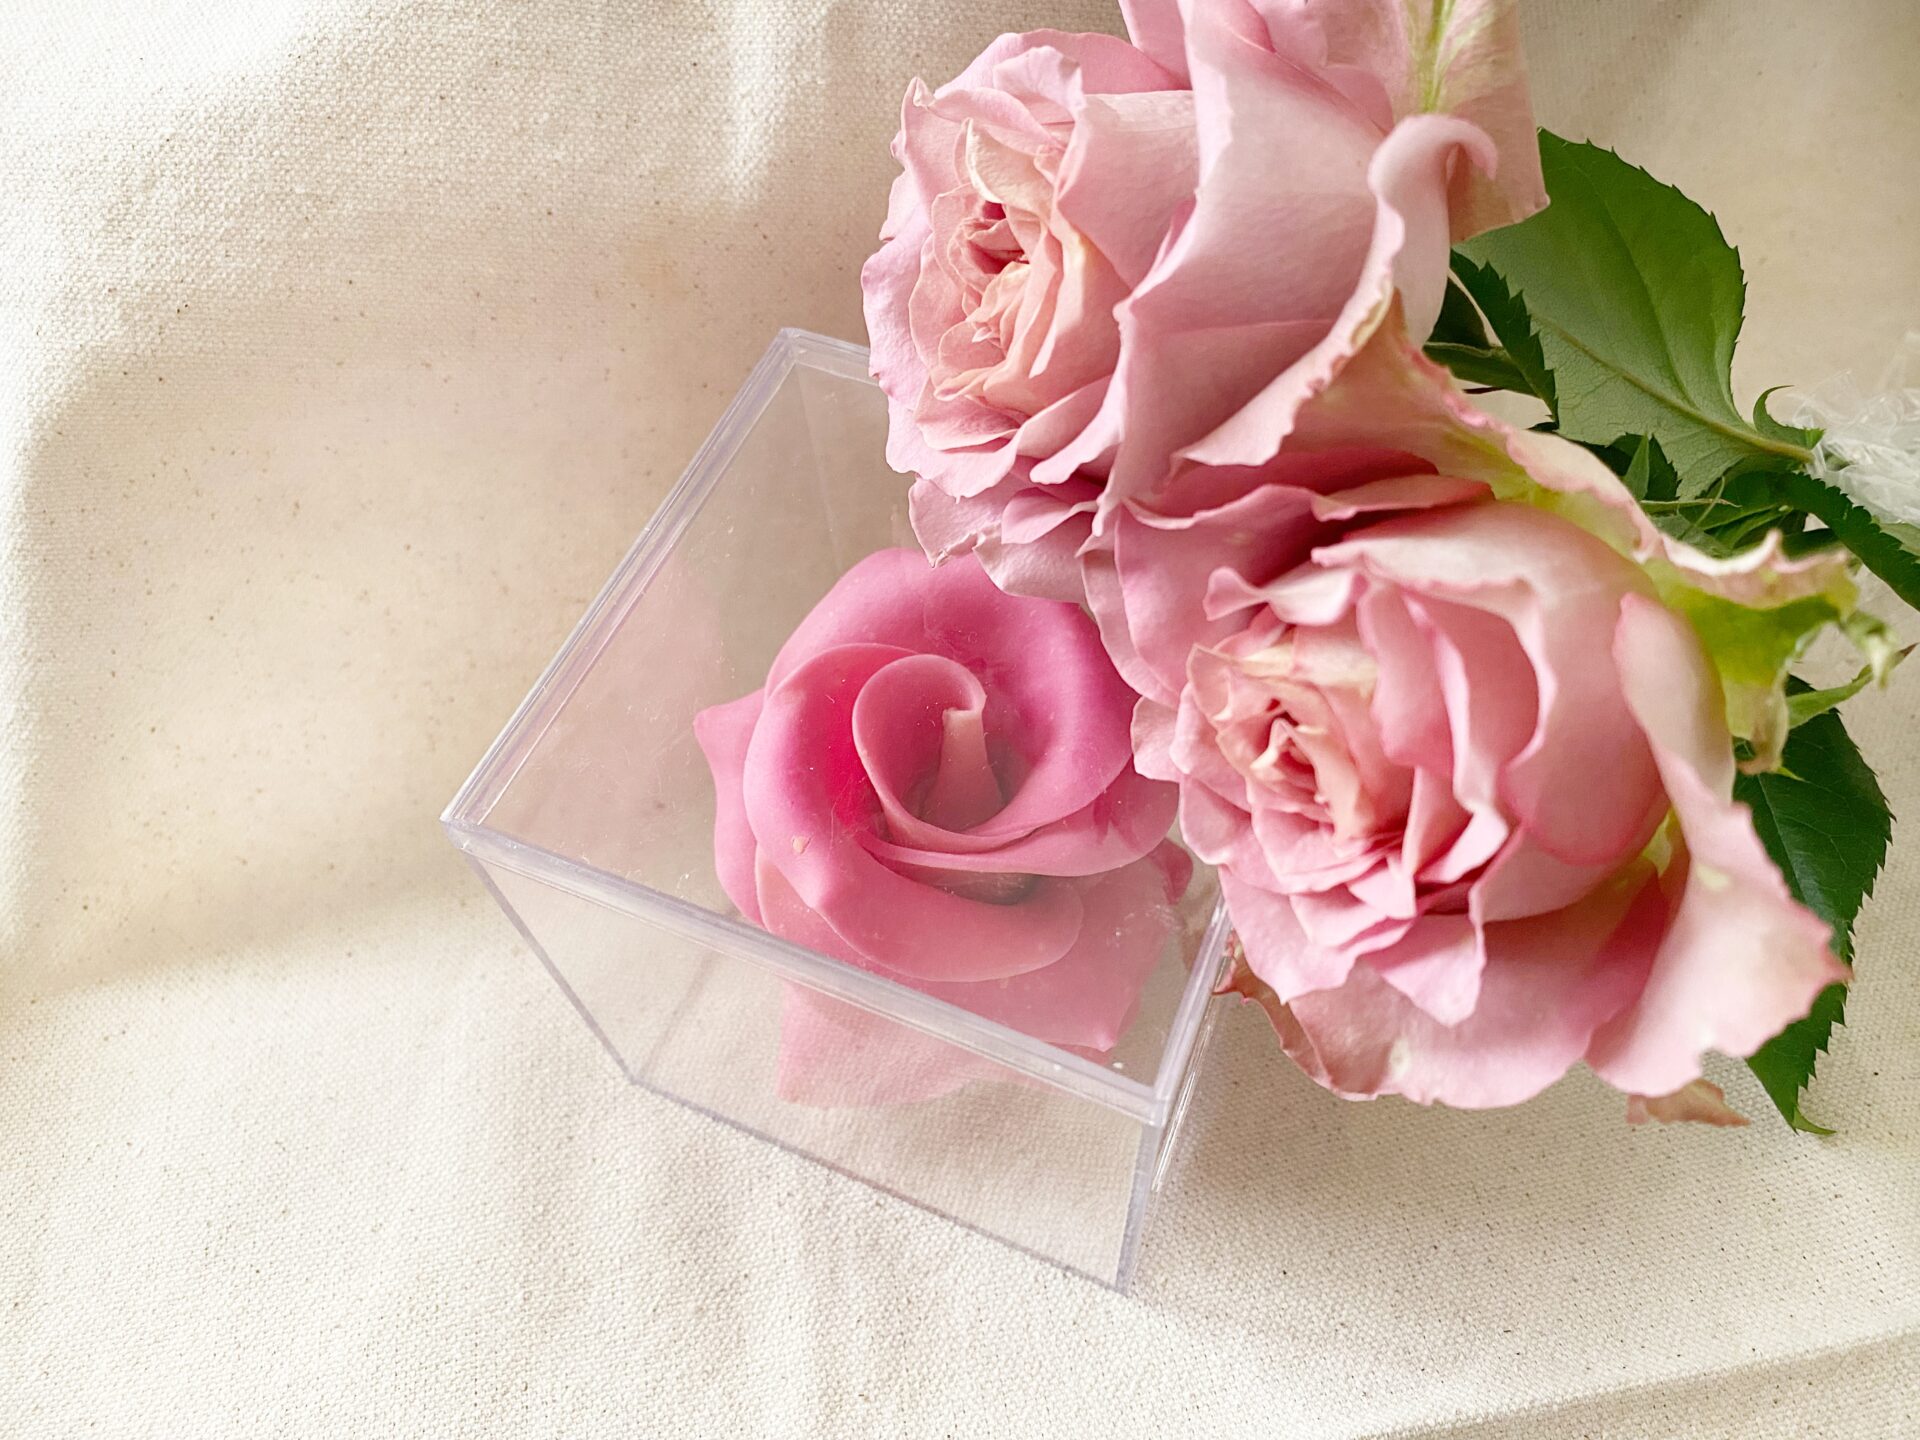 カリラフラワーチョコレートと本物のバラの写真。どちらもピンクいろです。ぱっとみた感じではそのちがいがわからないくらいそっくりです。フラワーチョコレートはいちりんのバラの花の部分が透明のアクリルケースにハイっています